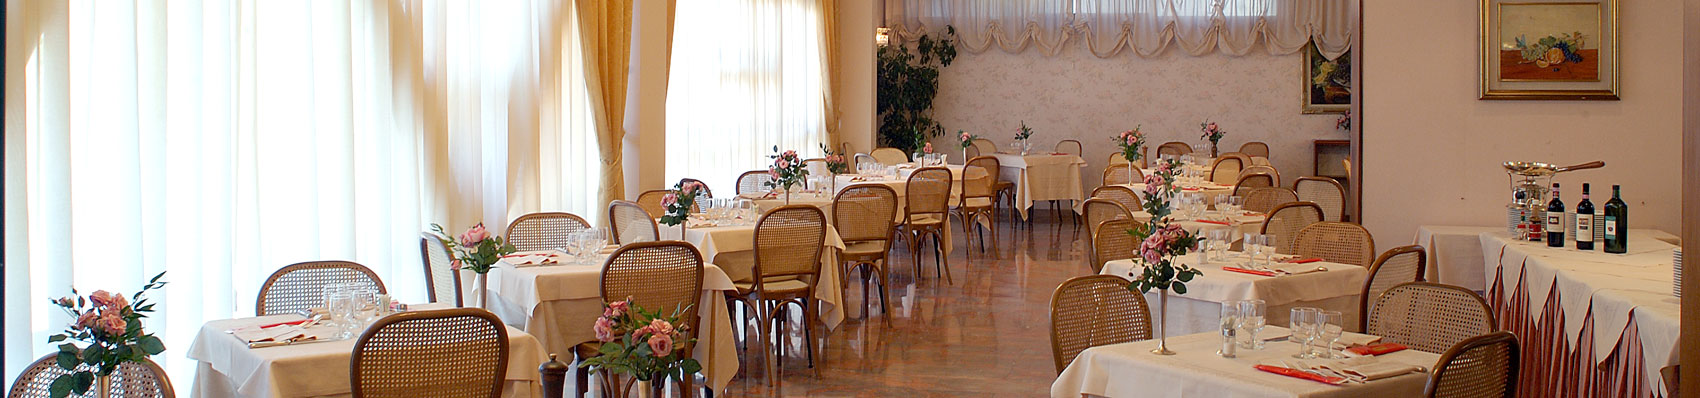 Hotel Torretta Restaurant in Montecatini